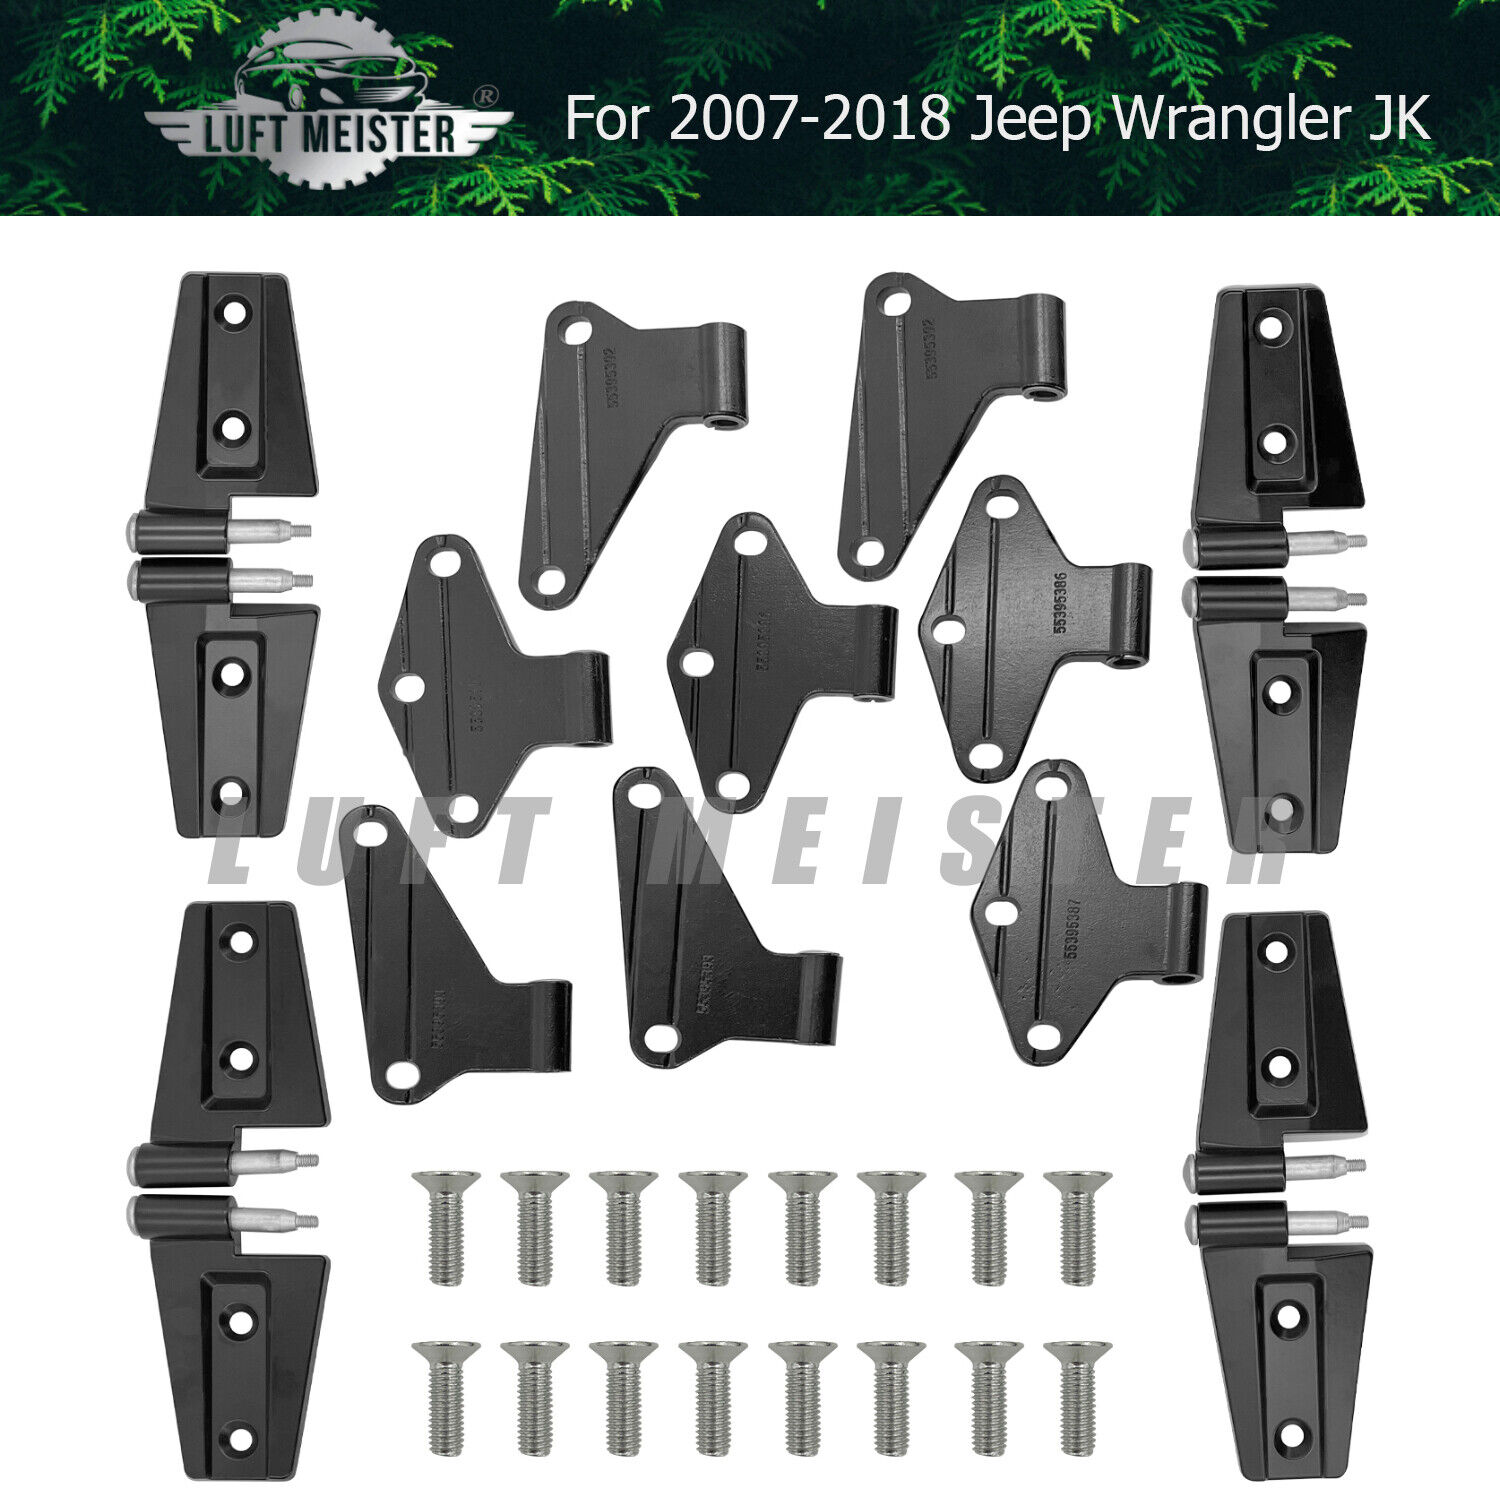 FOR 2007-2018 Jeep Wrangler JK Body Door Hinge Replacement Set Powder Coat 16pcs